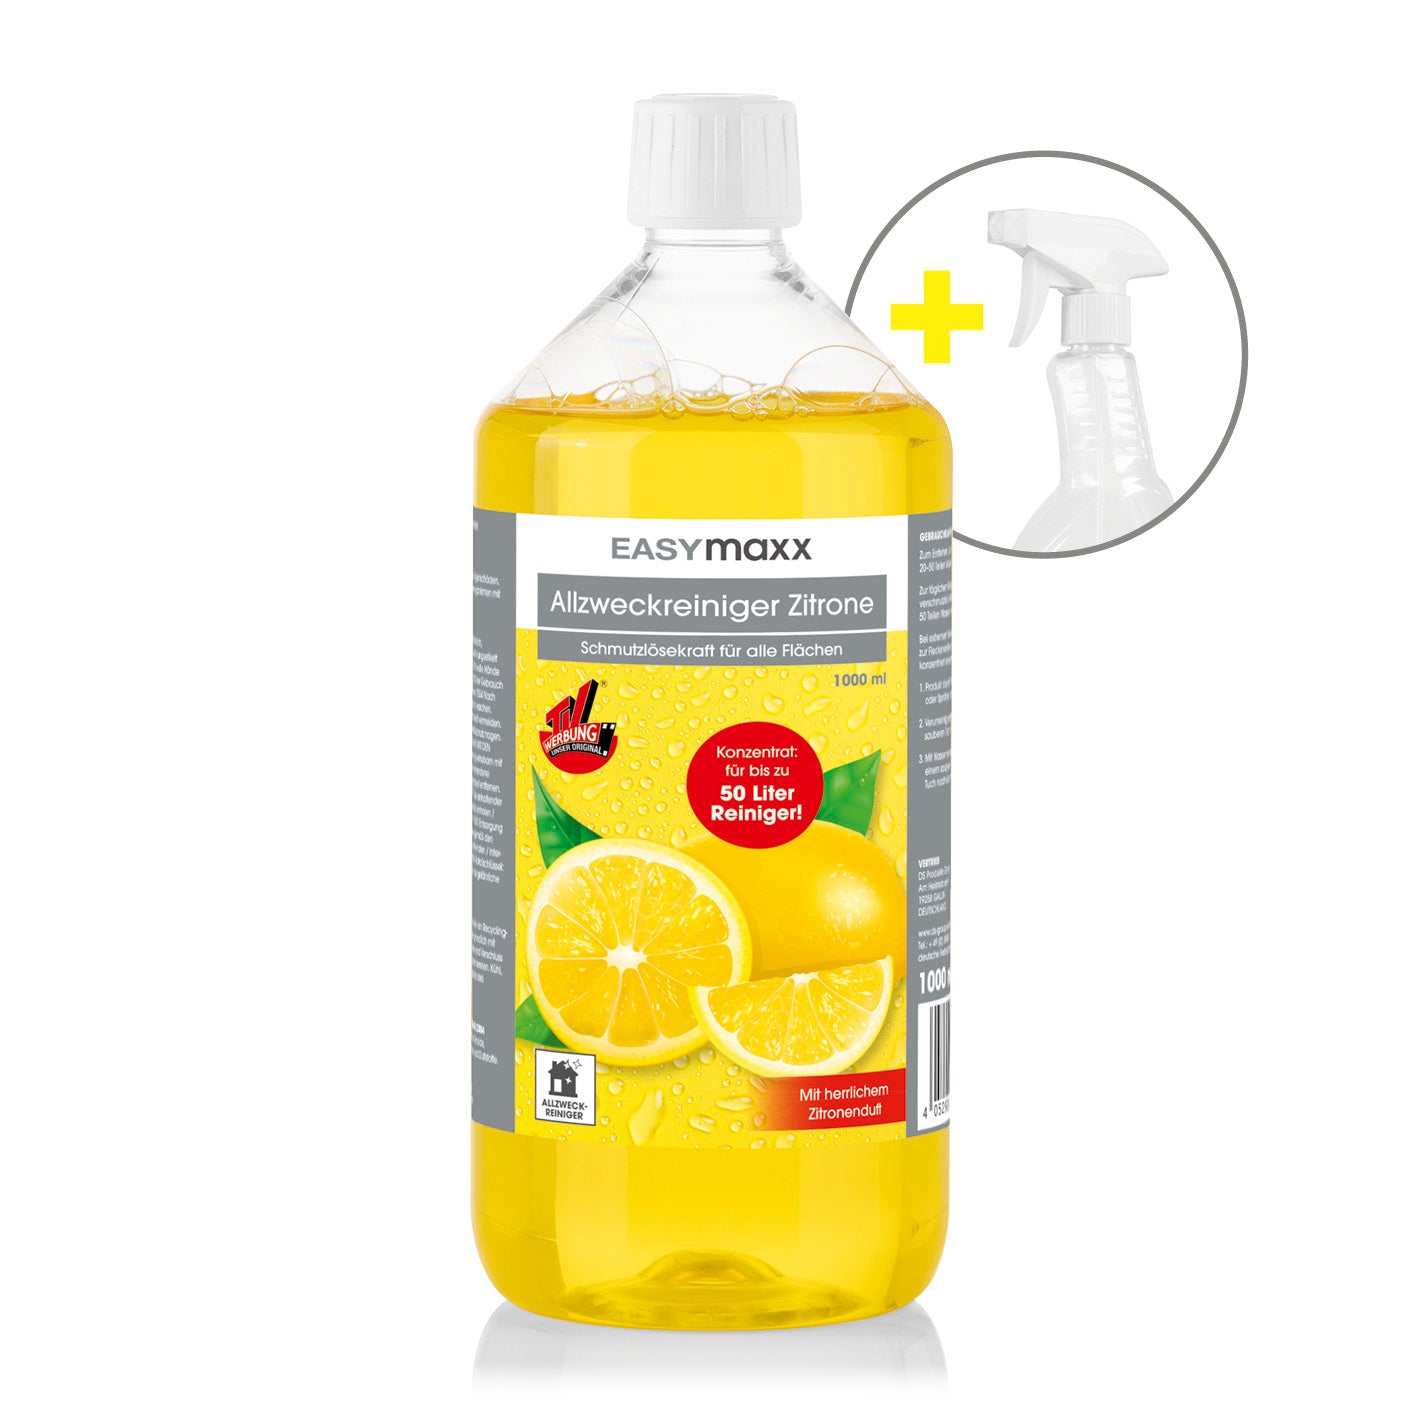 Reinigungsmittel Zitrone 1000ml inkl. Sprühflasche